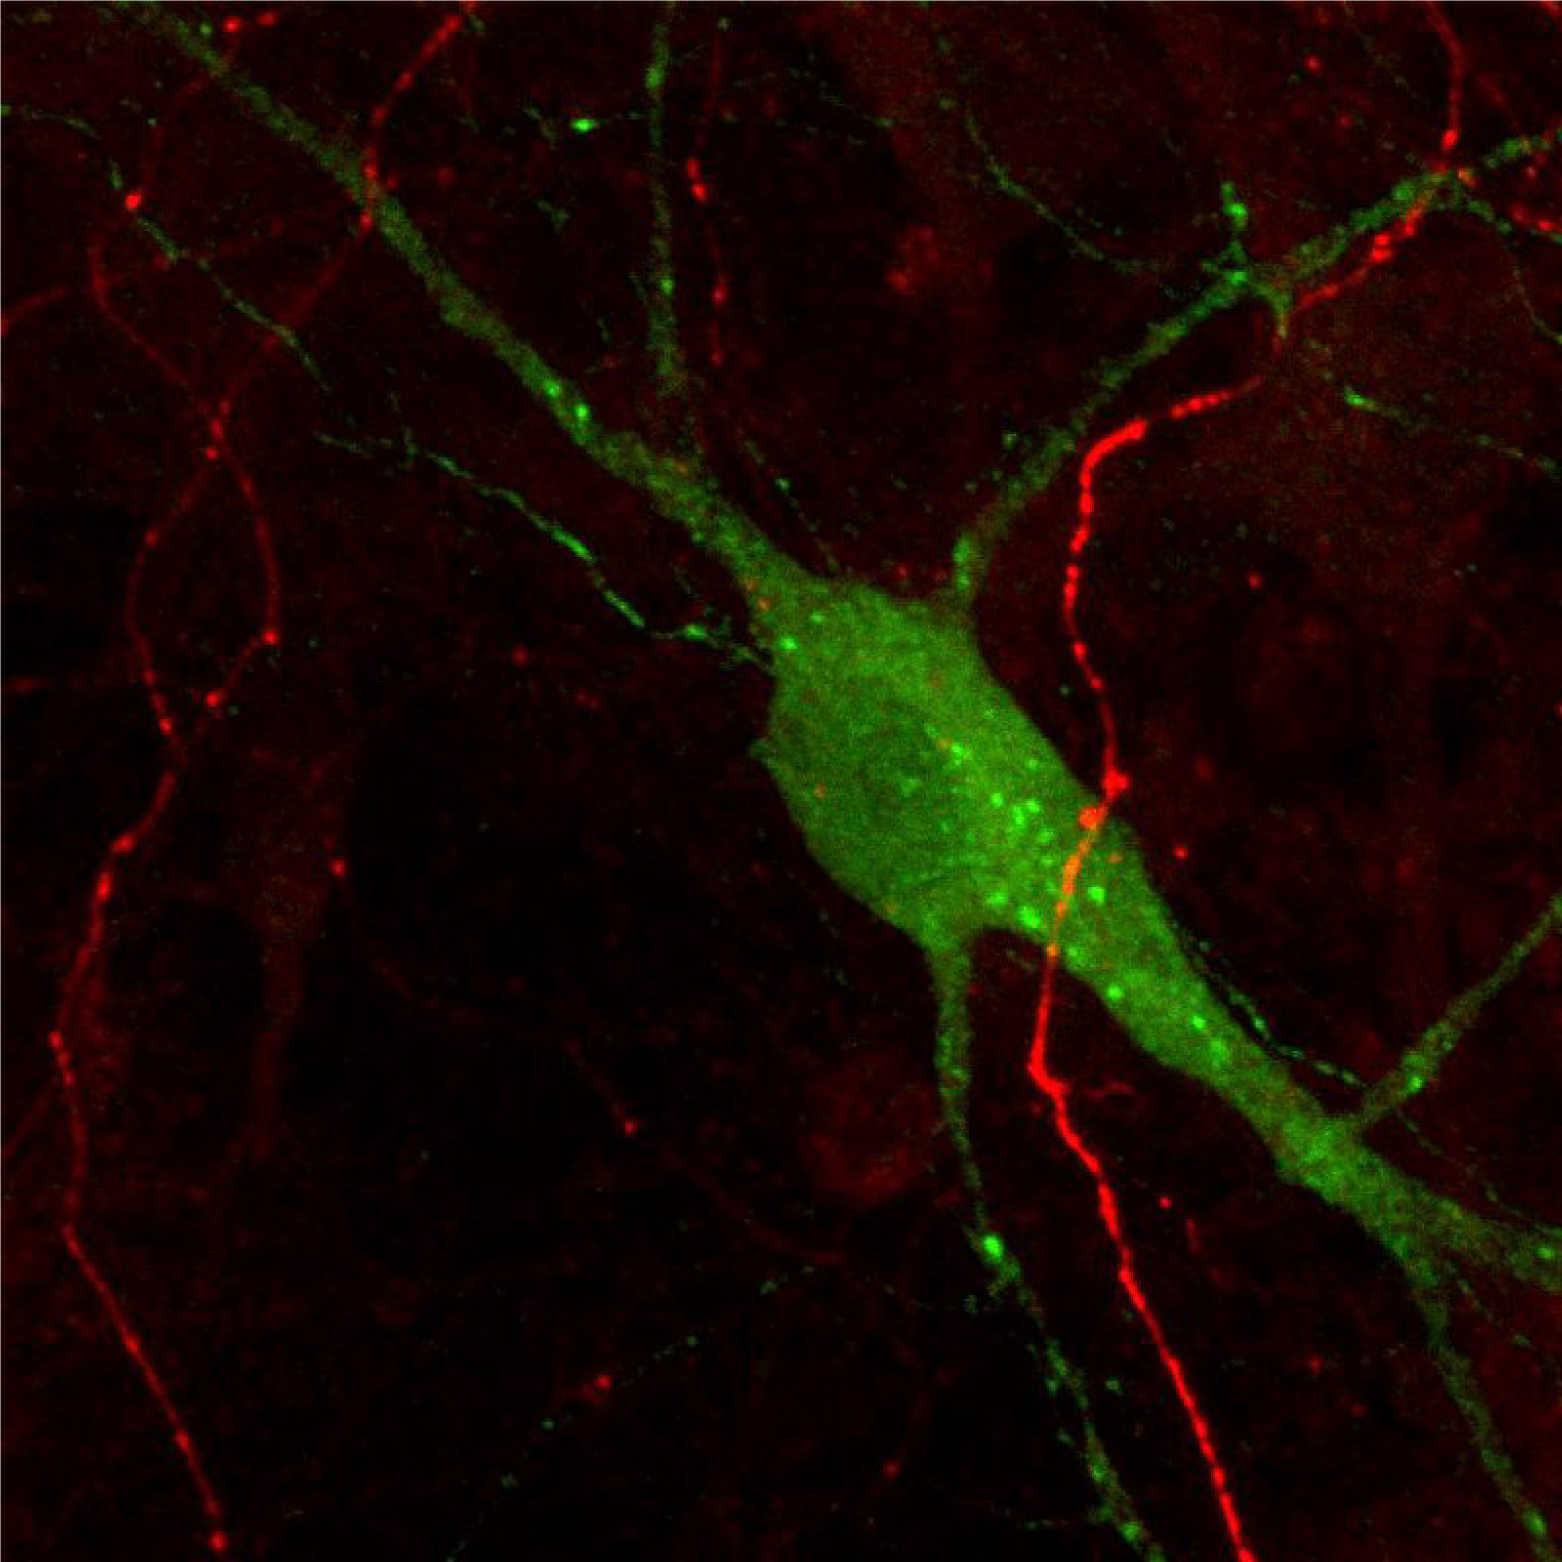 マウス初代培養中脳ニューロンのドーパミン作動性およびセロトニン作動性ニューロンの免疫蛍光染色像